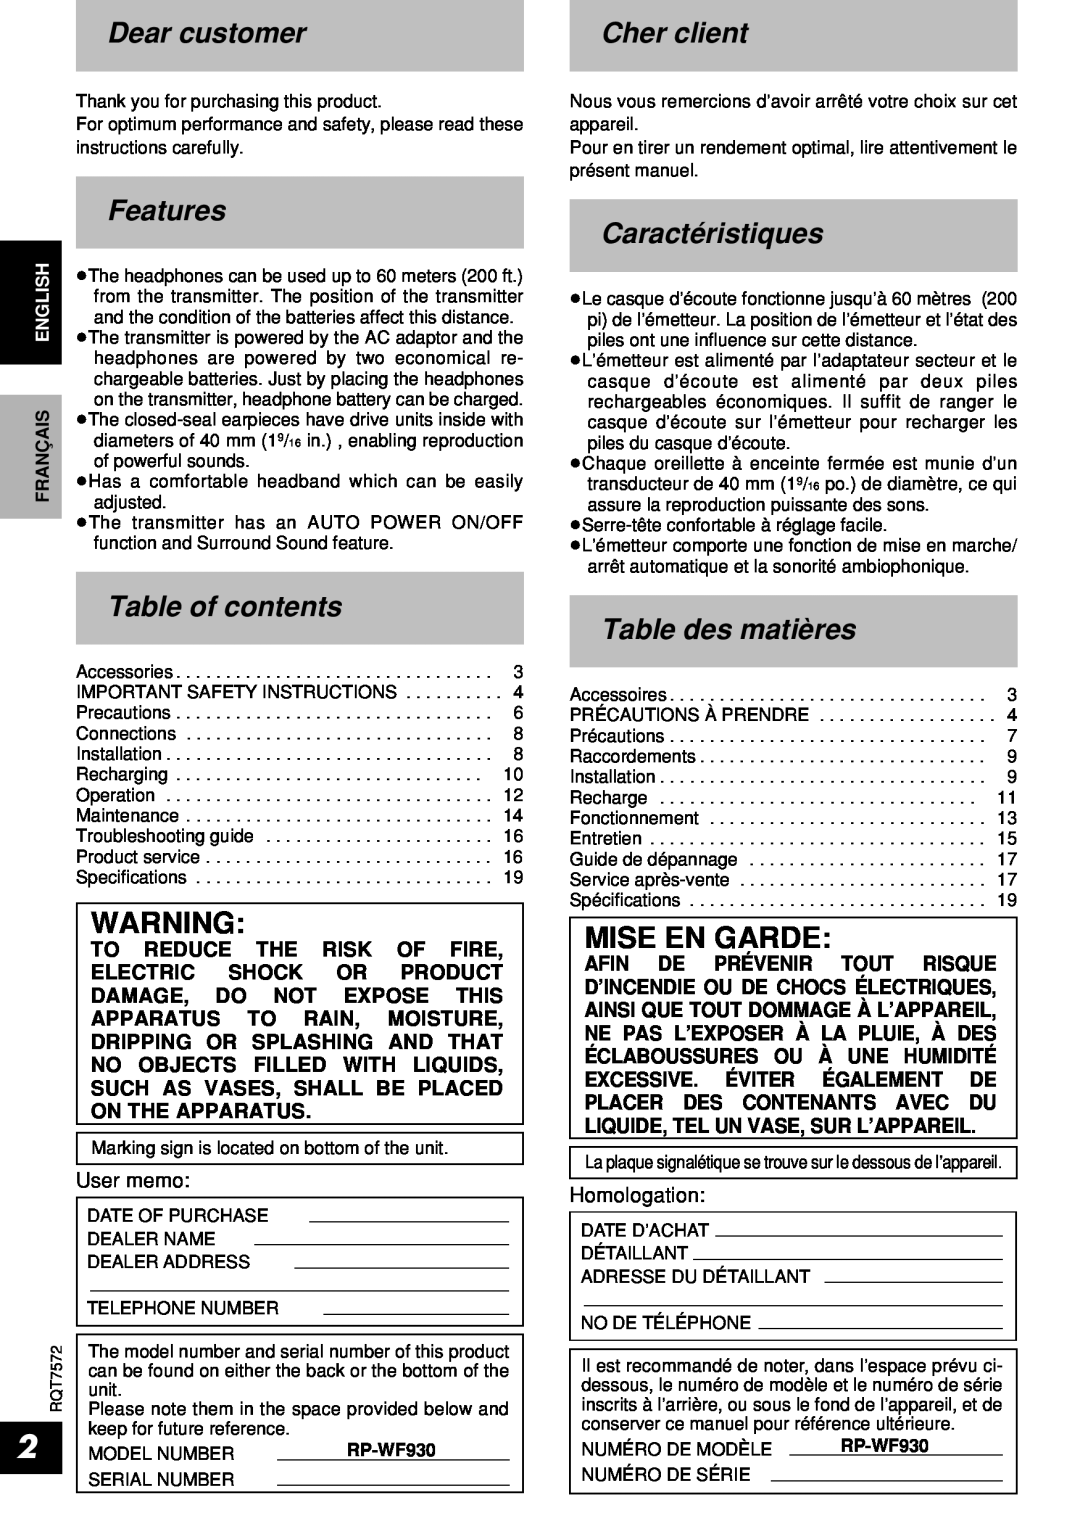 Panasonic RP-WF930 Dear customer, Cher client, Features, Table of contents, Caractéristiques, Table des matières 